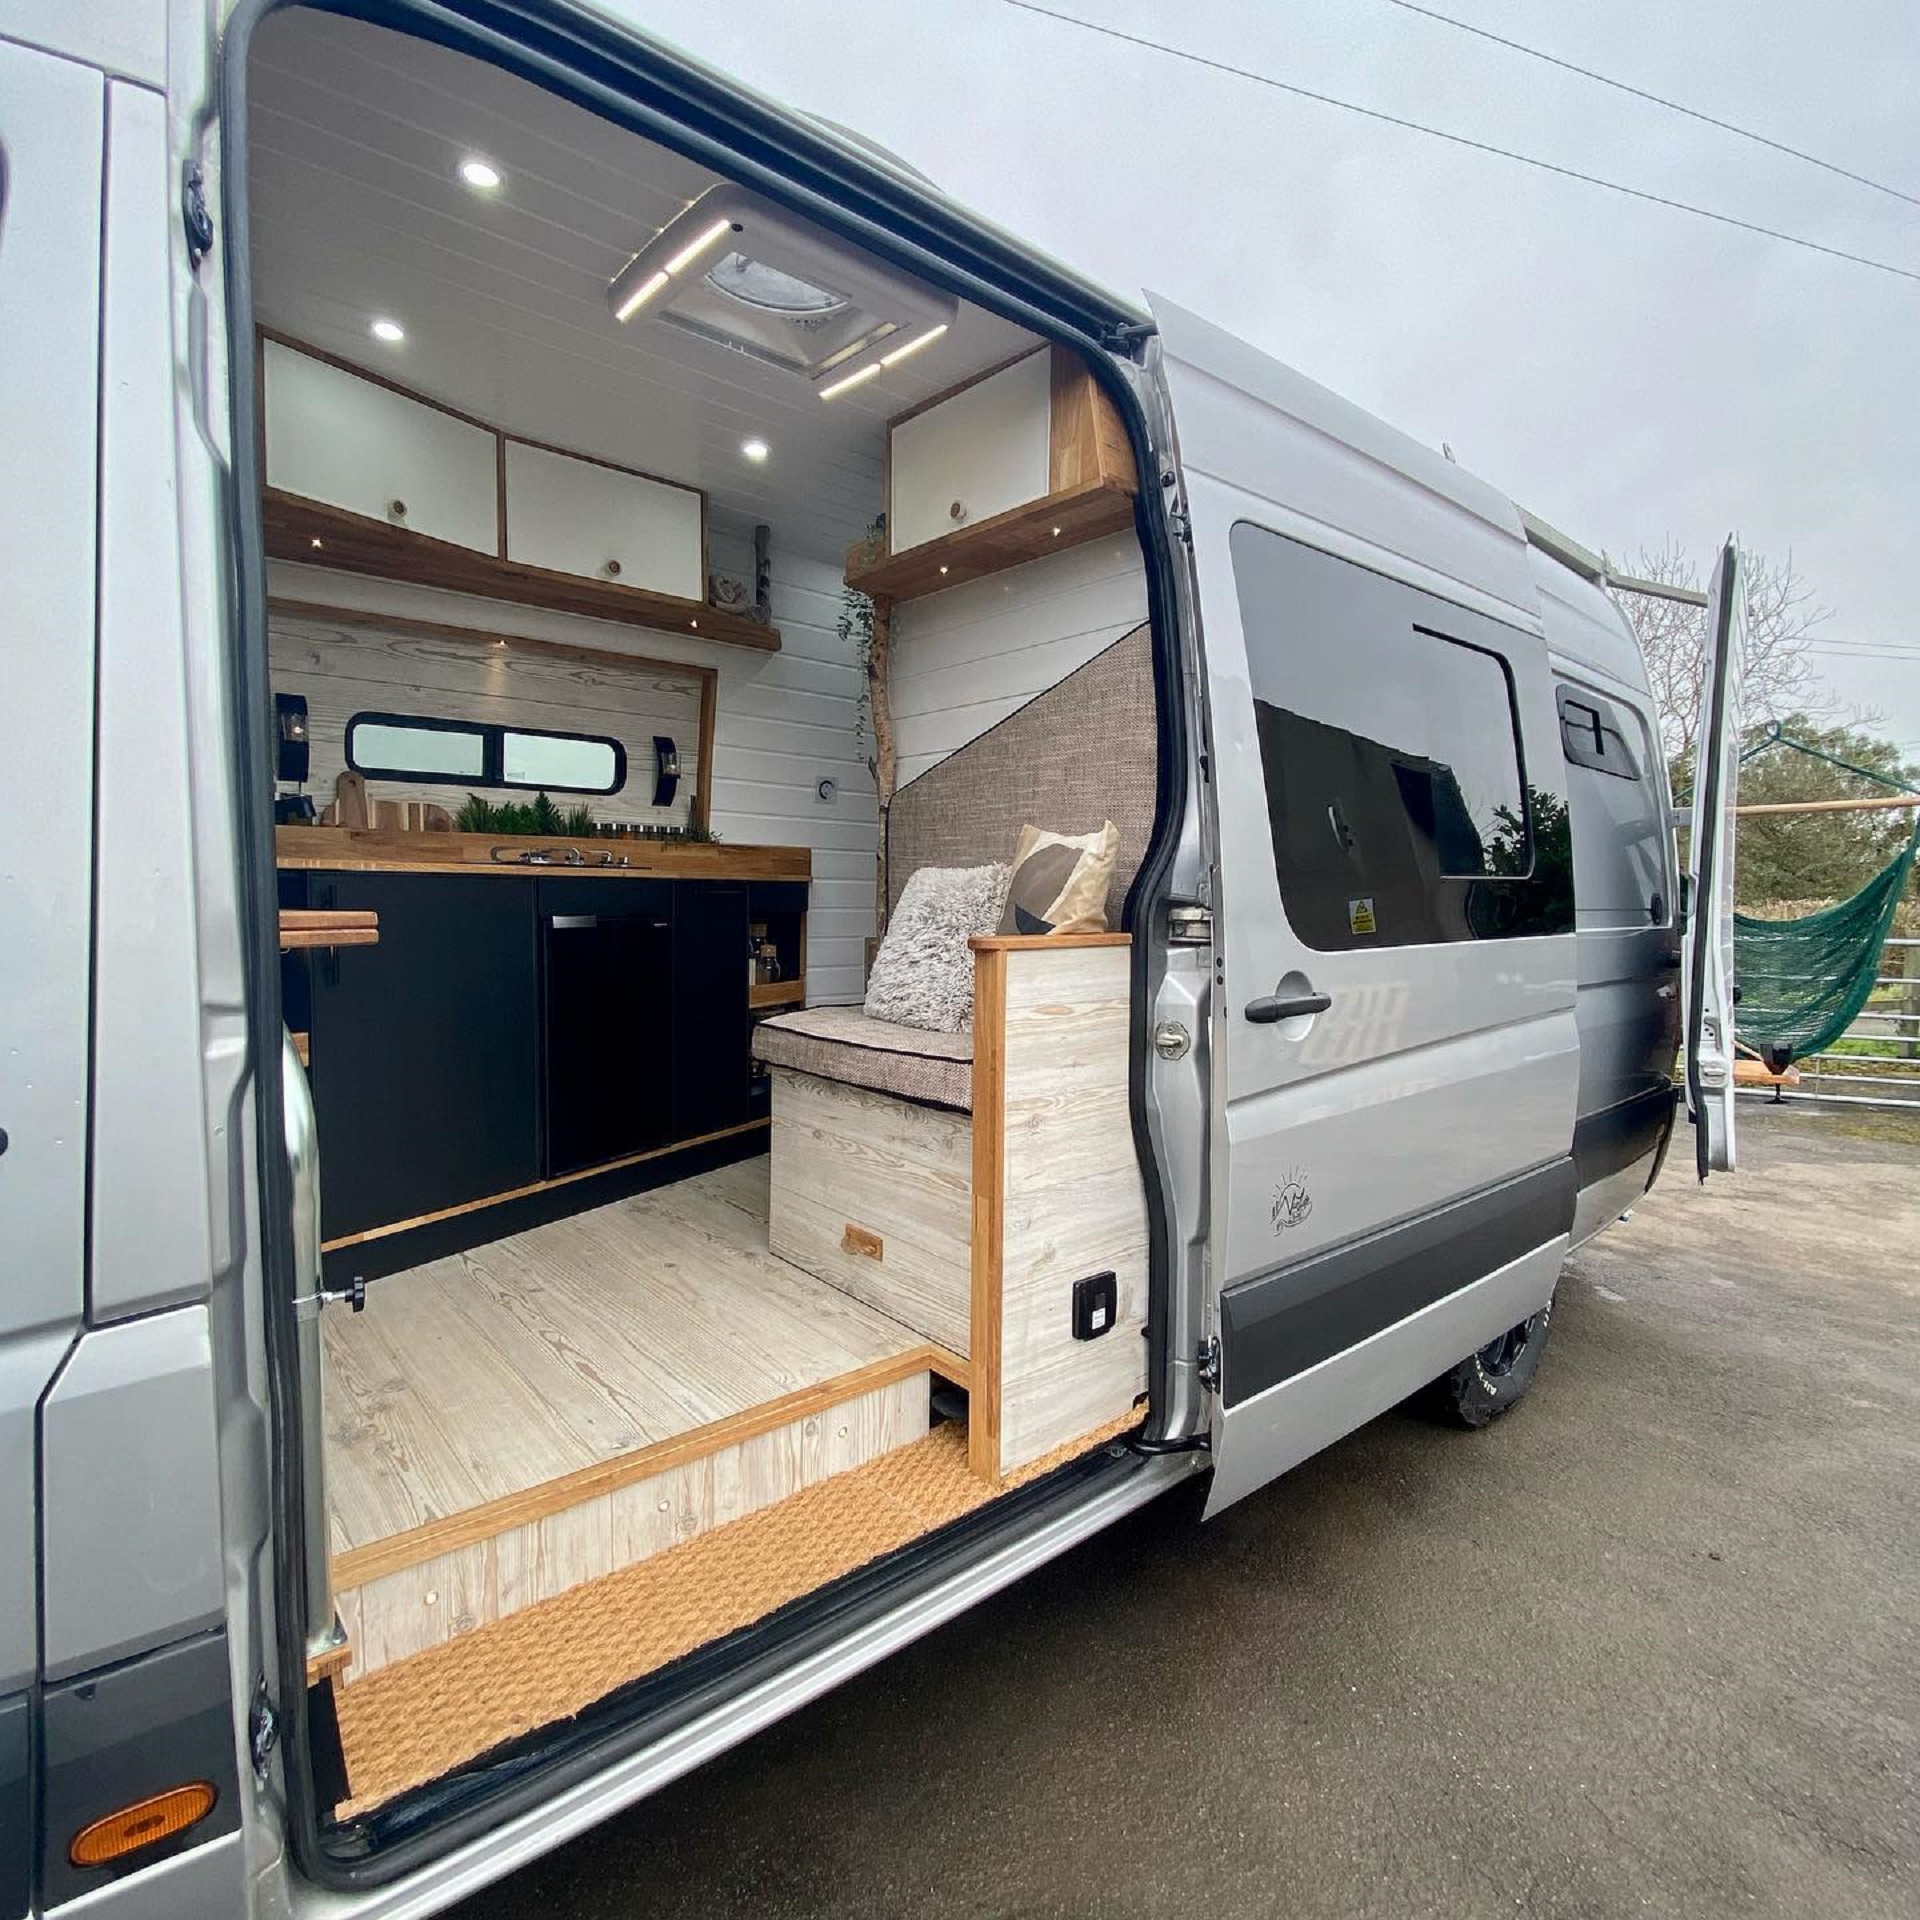 VW Crafter-Based Campervan Is a Gorgeous, Off-Grid Resort Designed